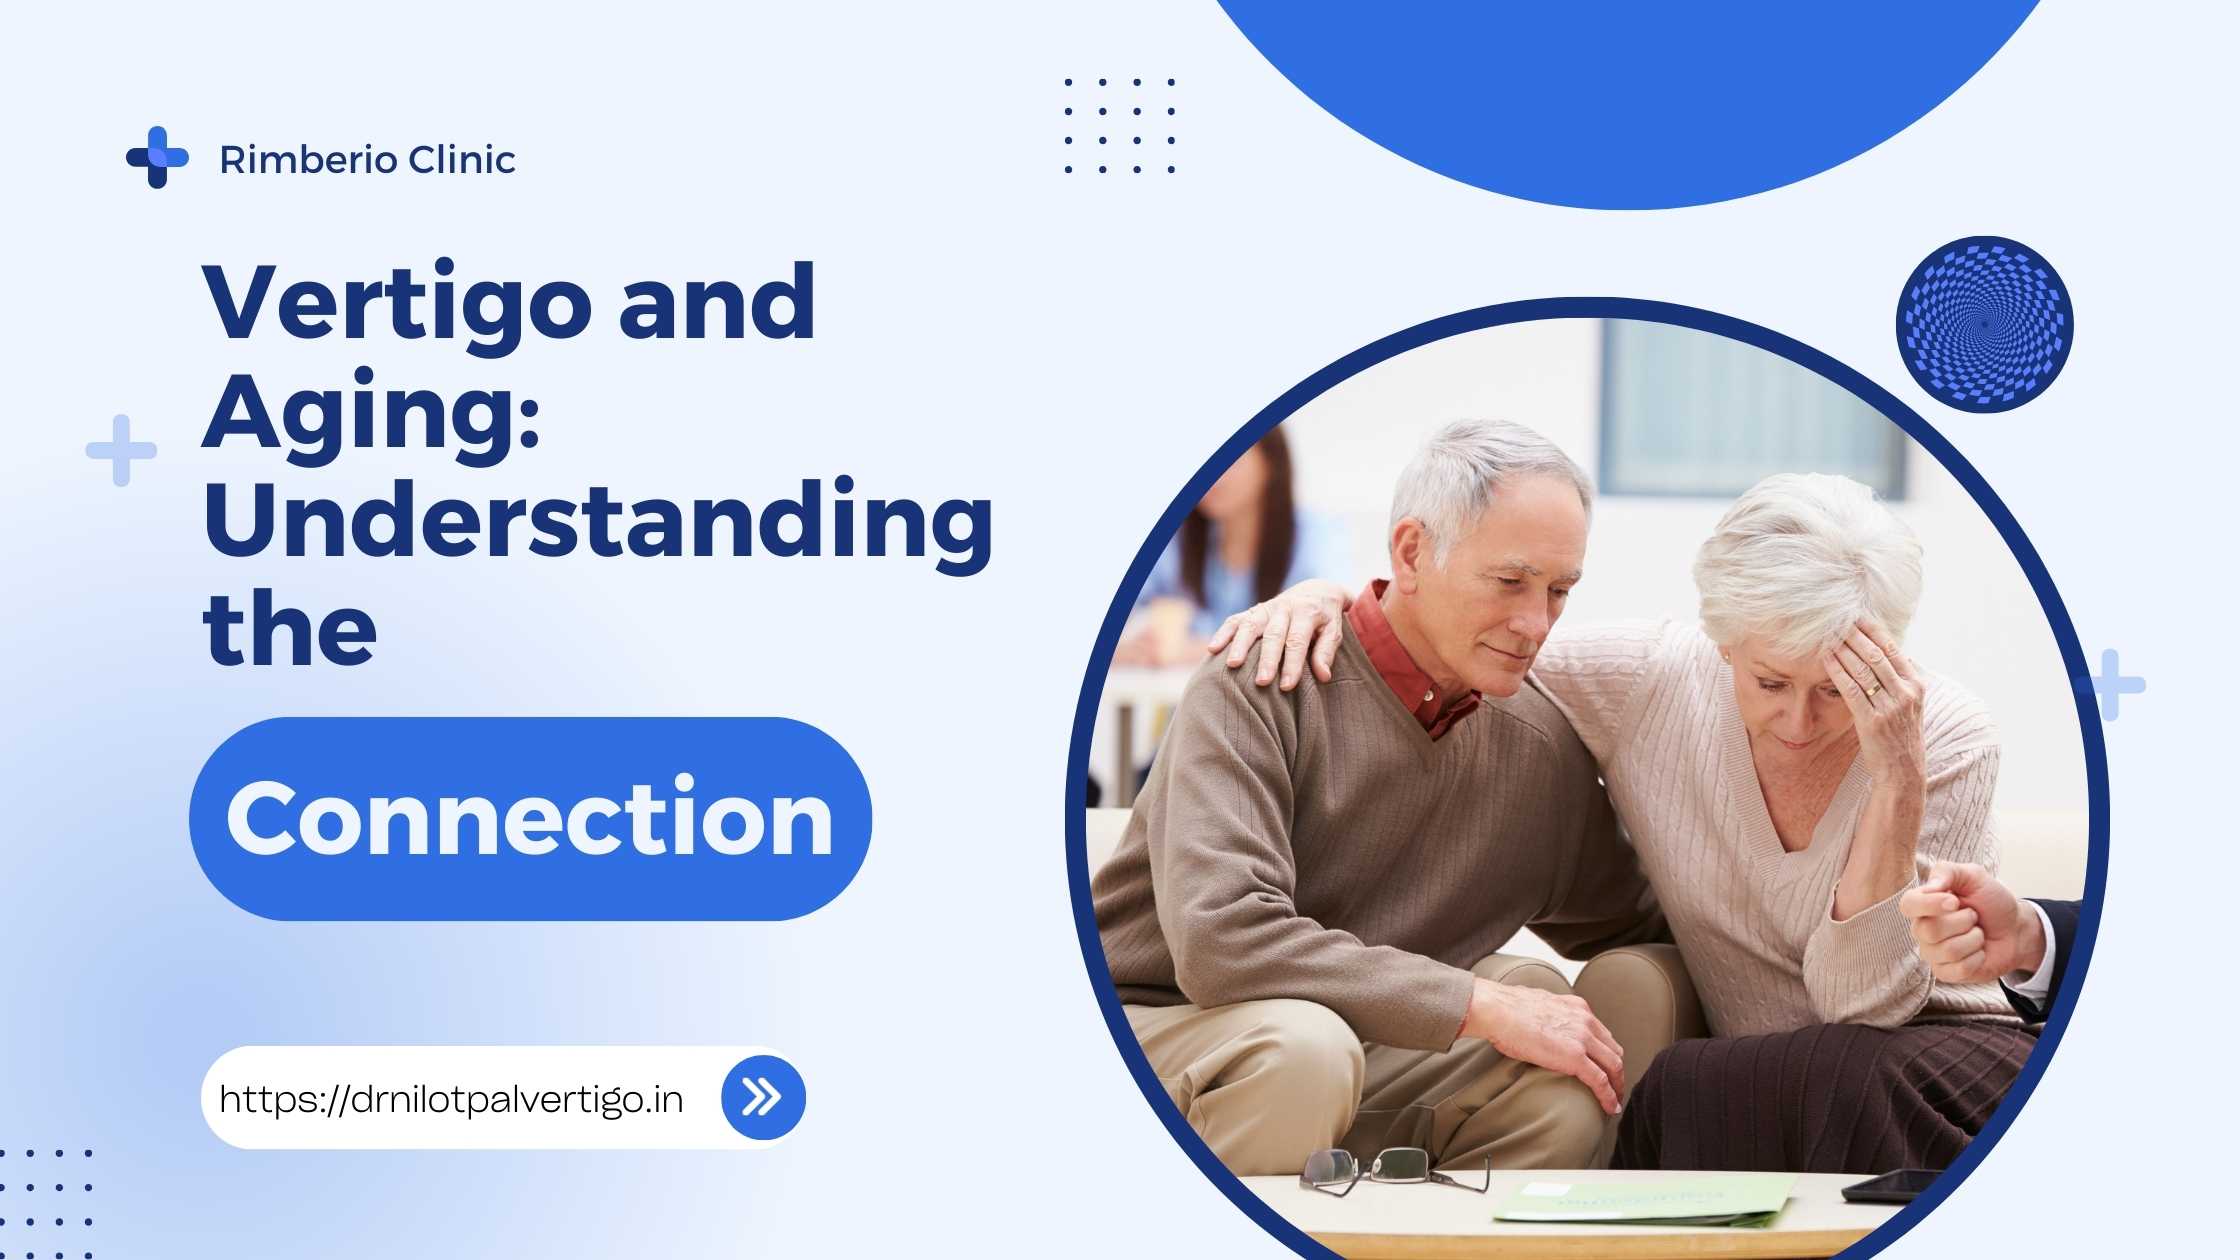 Vertigo and Aging: Understanding the Connection